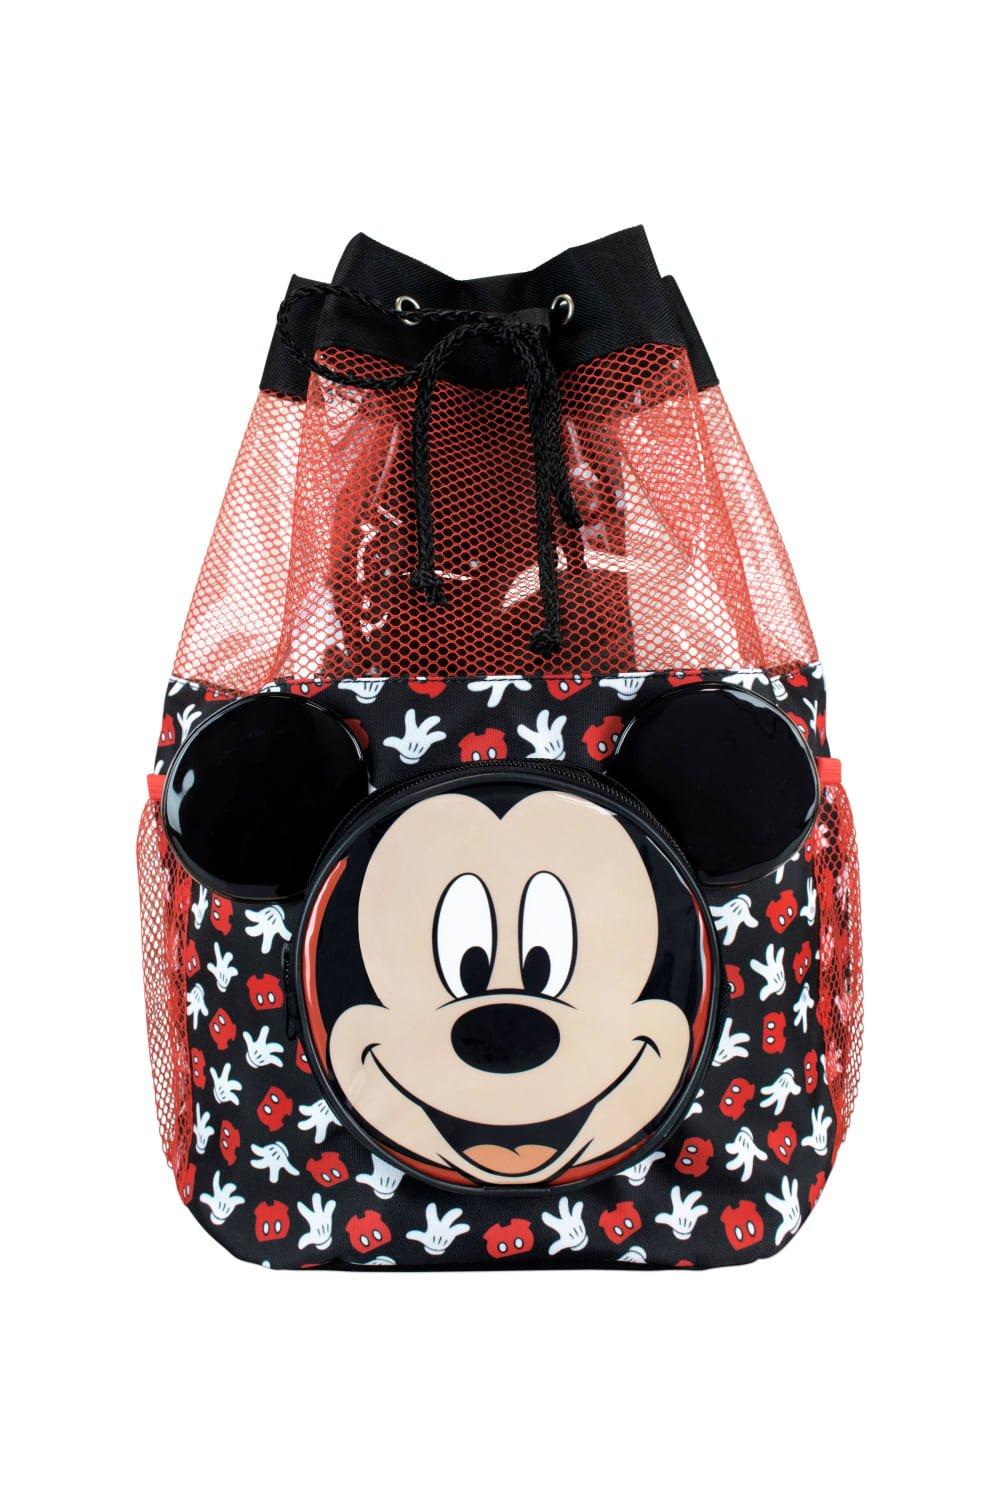 Сумка для плавания с Микки Маусом Disney, черный женская сумка на одно плечо с изображением микки мауса